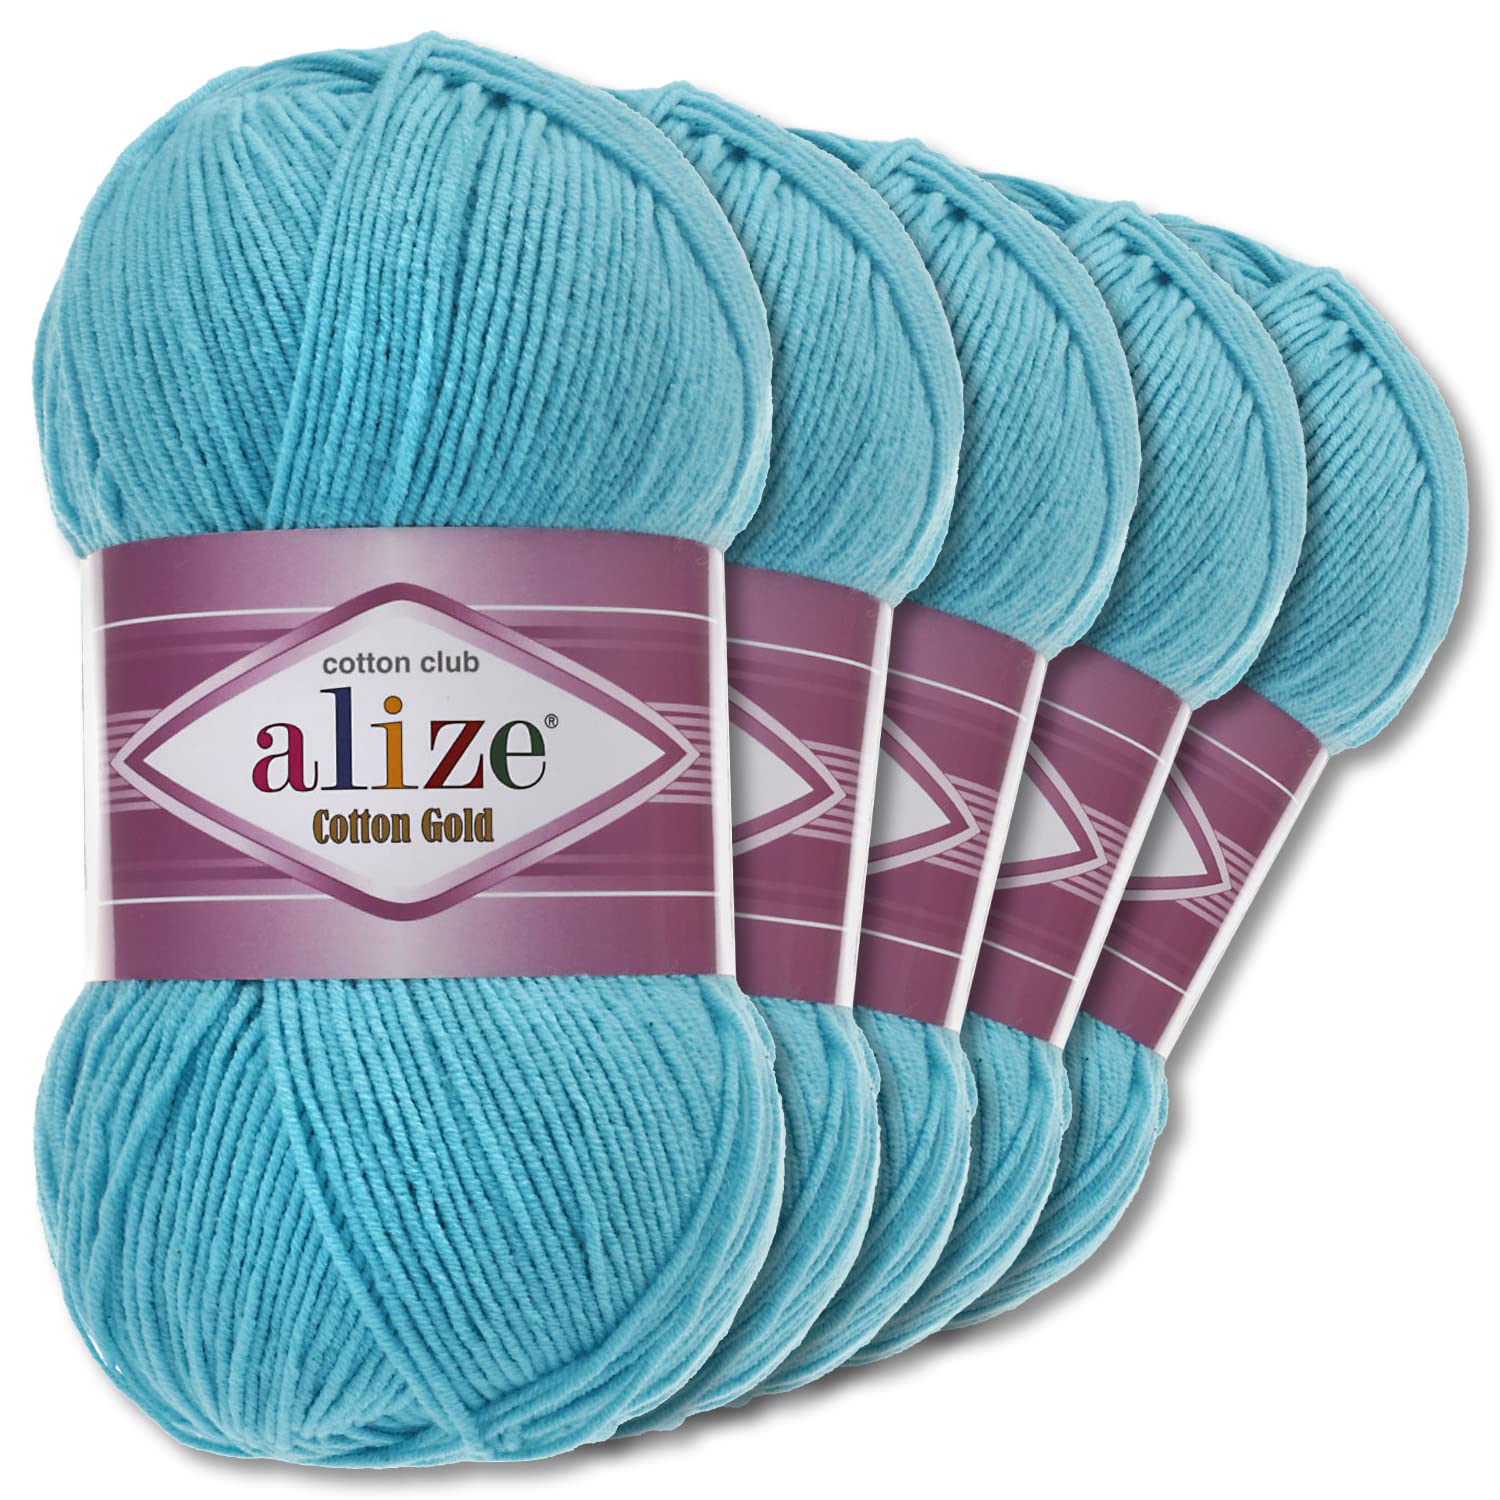 Alize 5 x 100 g Cotton Gold Premium Wolle| 39 Farben Sommerwolle Garn Stricken Amigurumi (287 | Türkis)